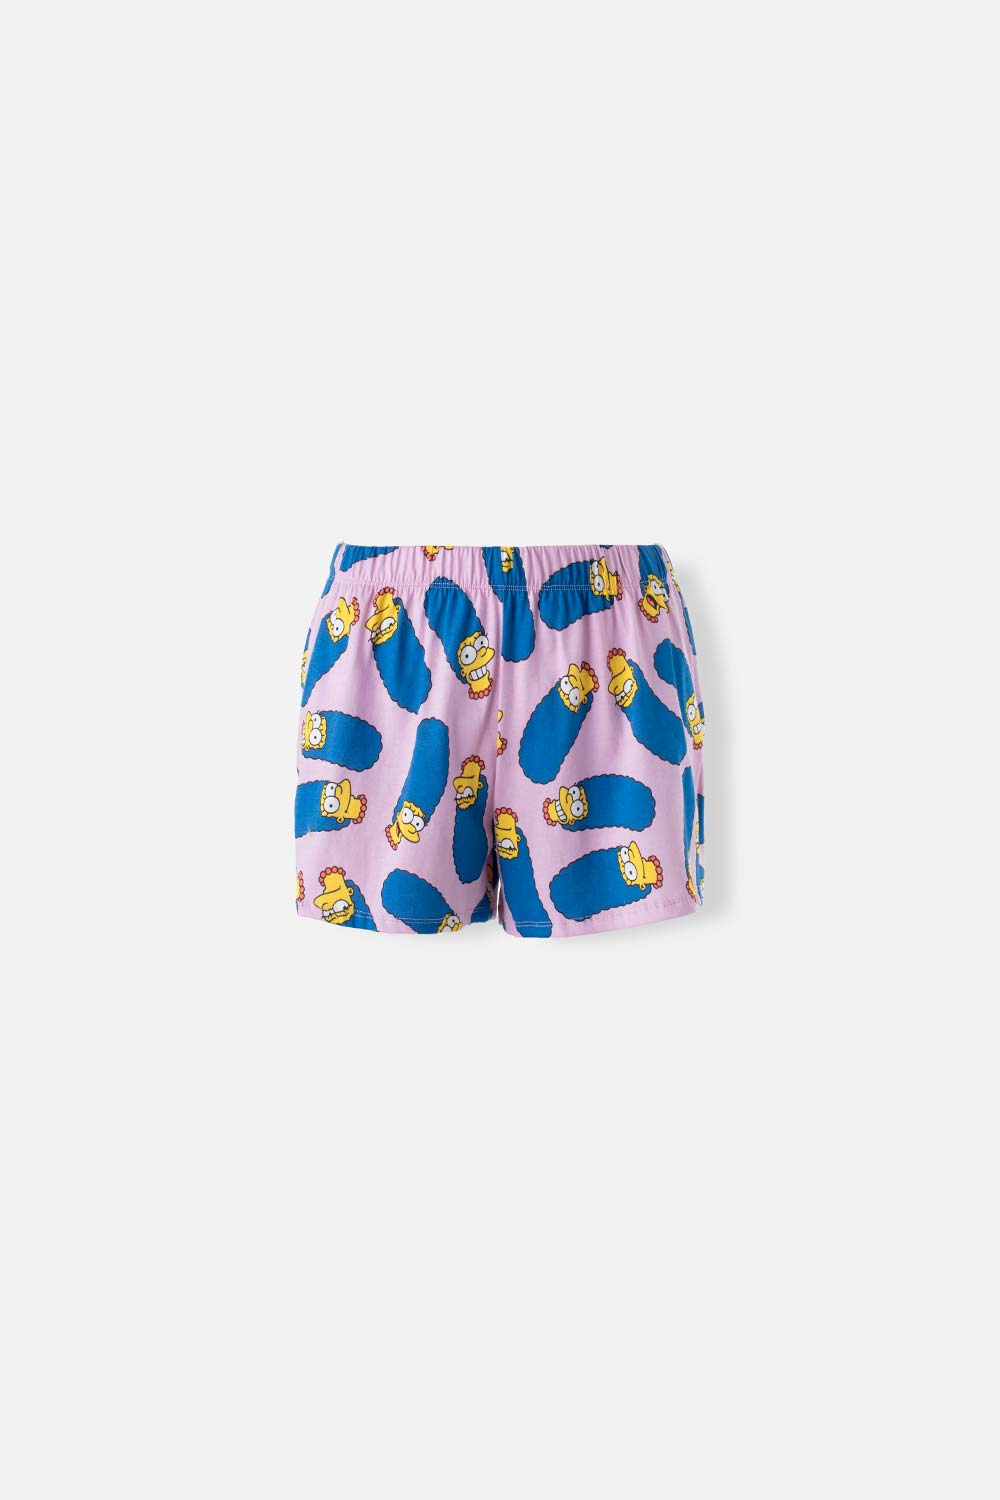 Short de pijama de Los Simpsons azul para mujer XS-0